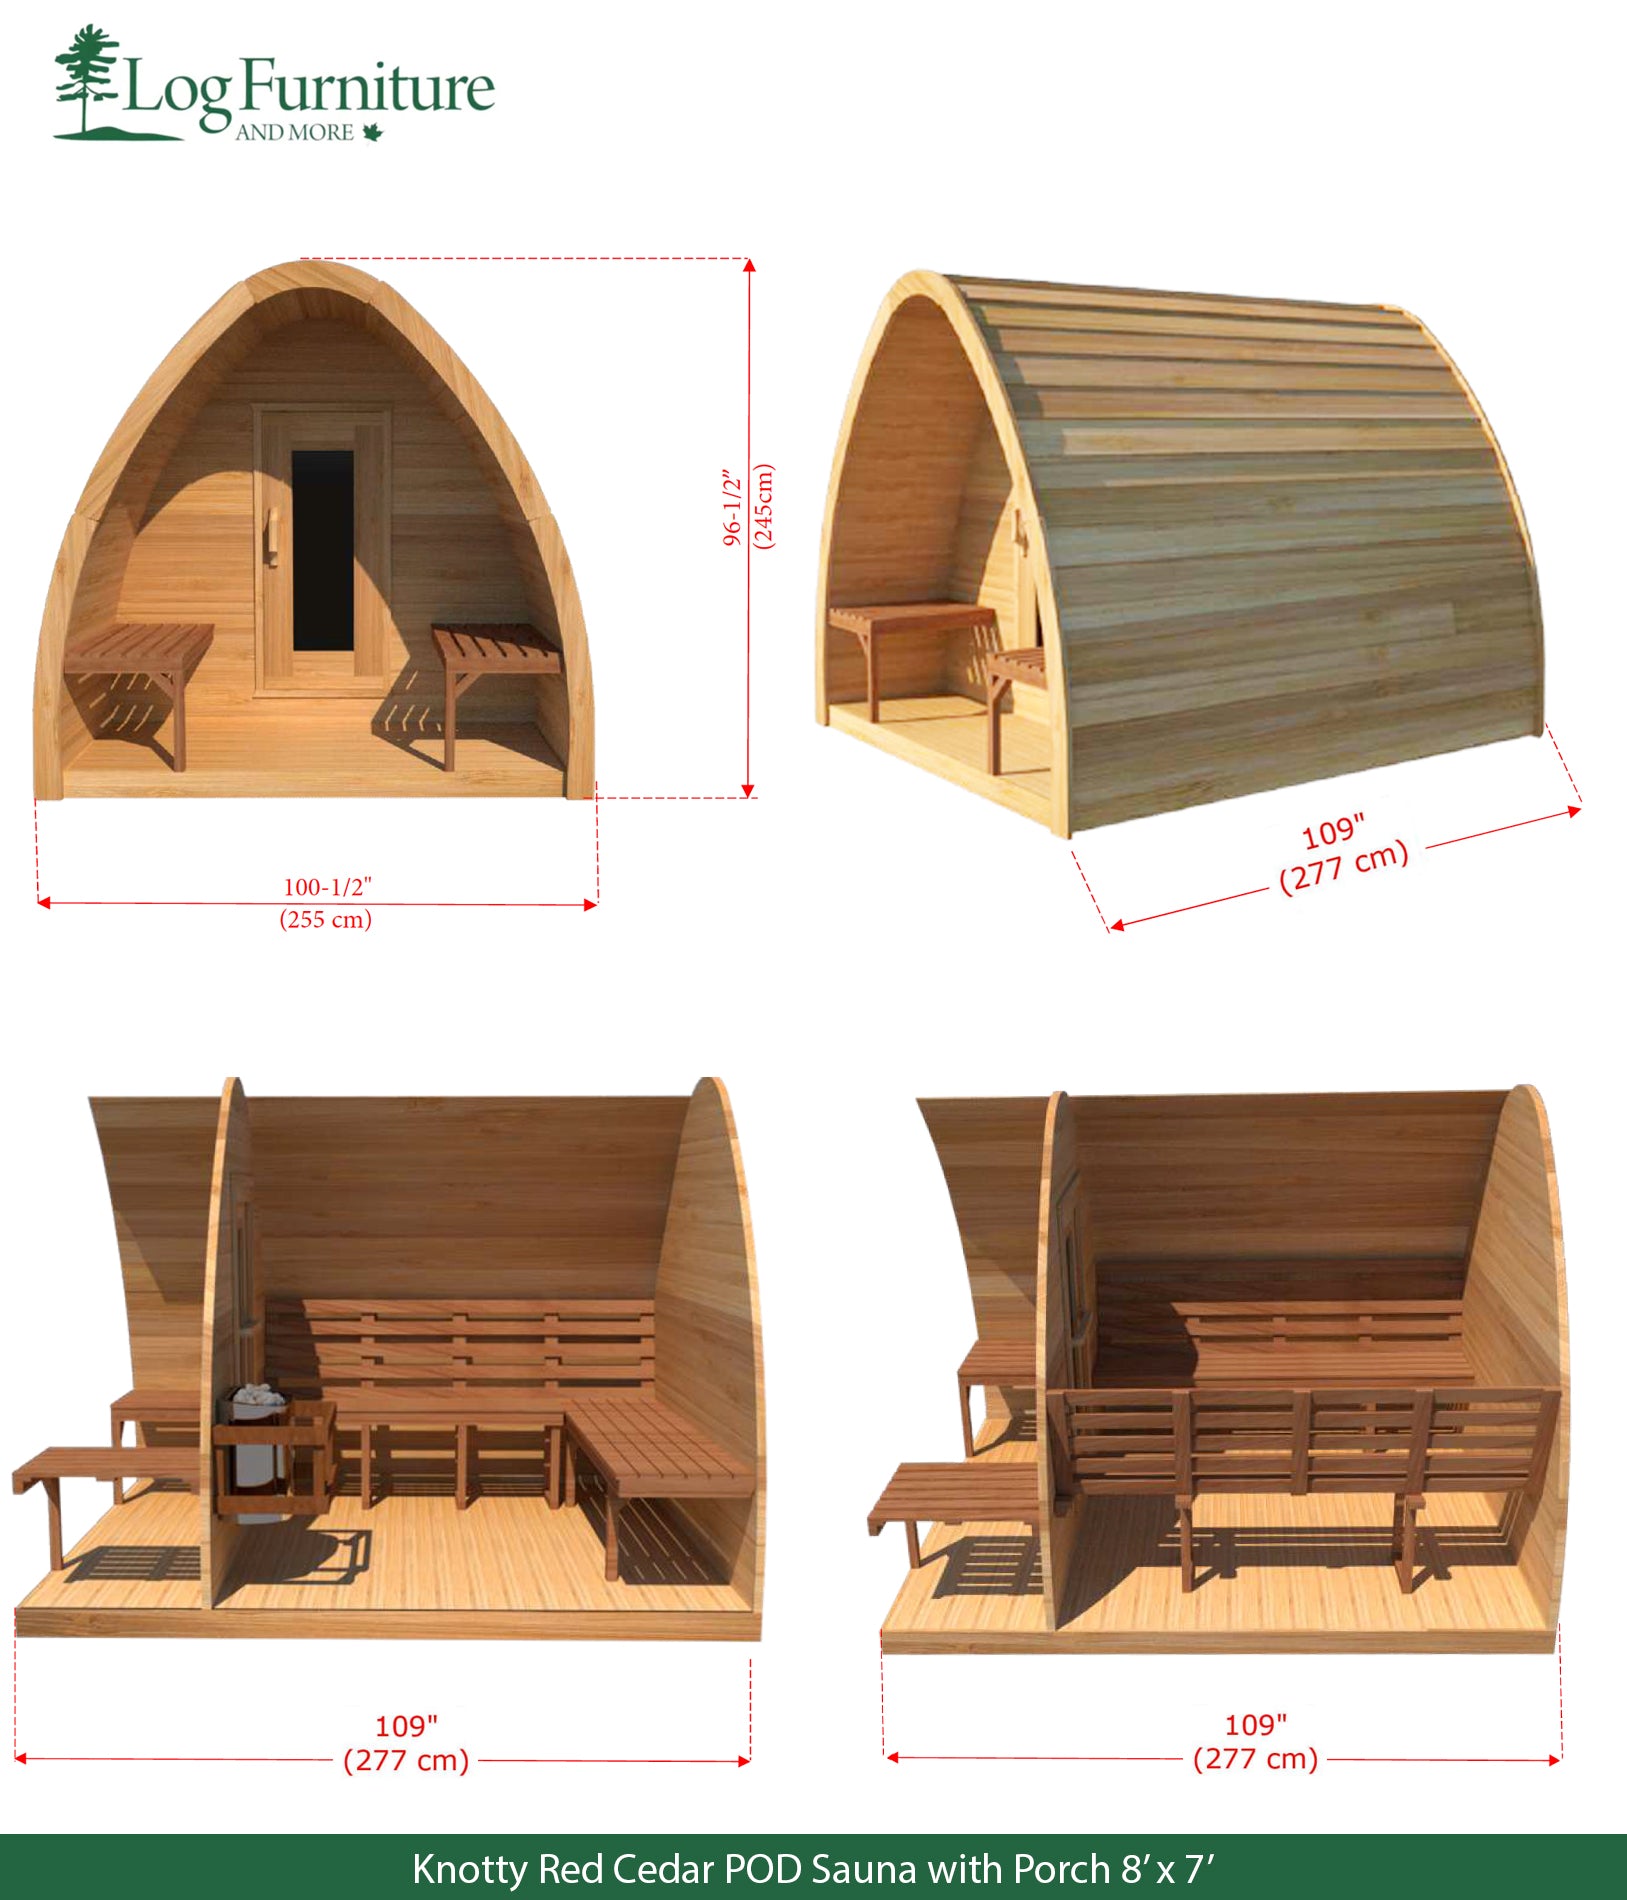 Knotty Red Cedar POD Sauna with Porch 8' x 7'